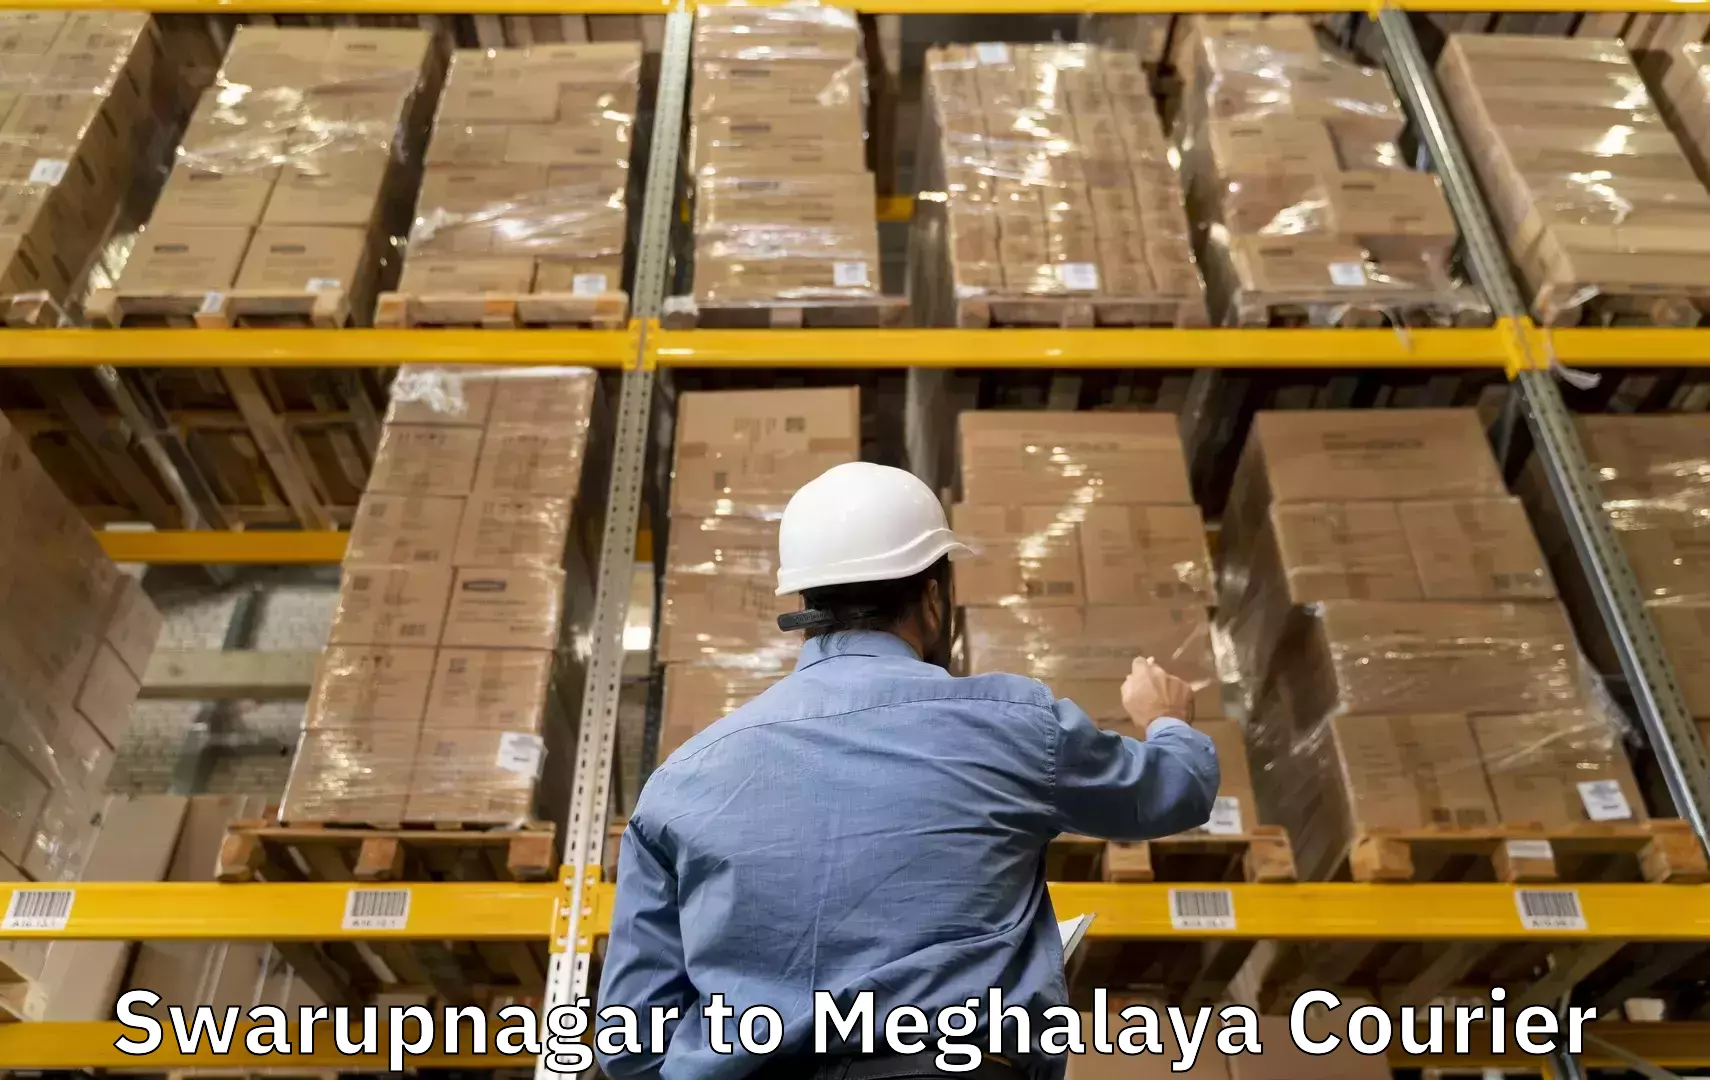 Luggage dispatch service Swarupnagar to Meghalaya